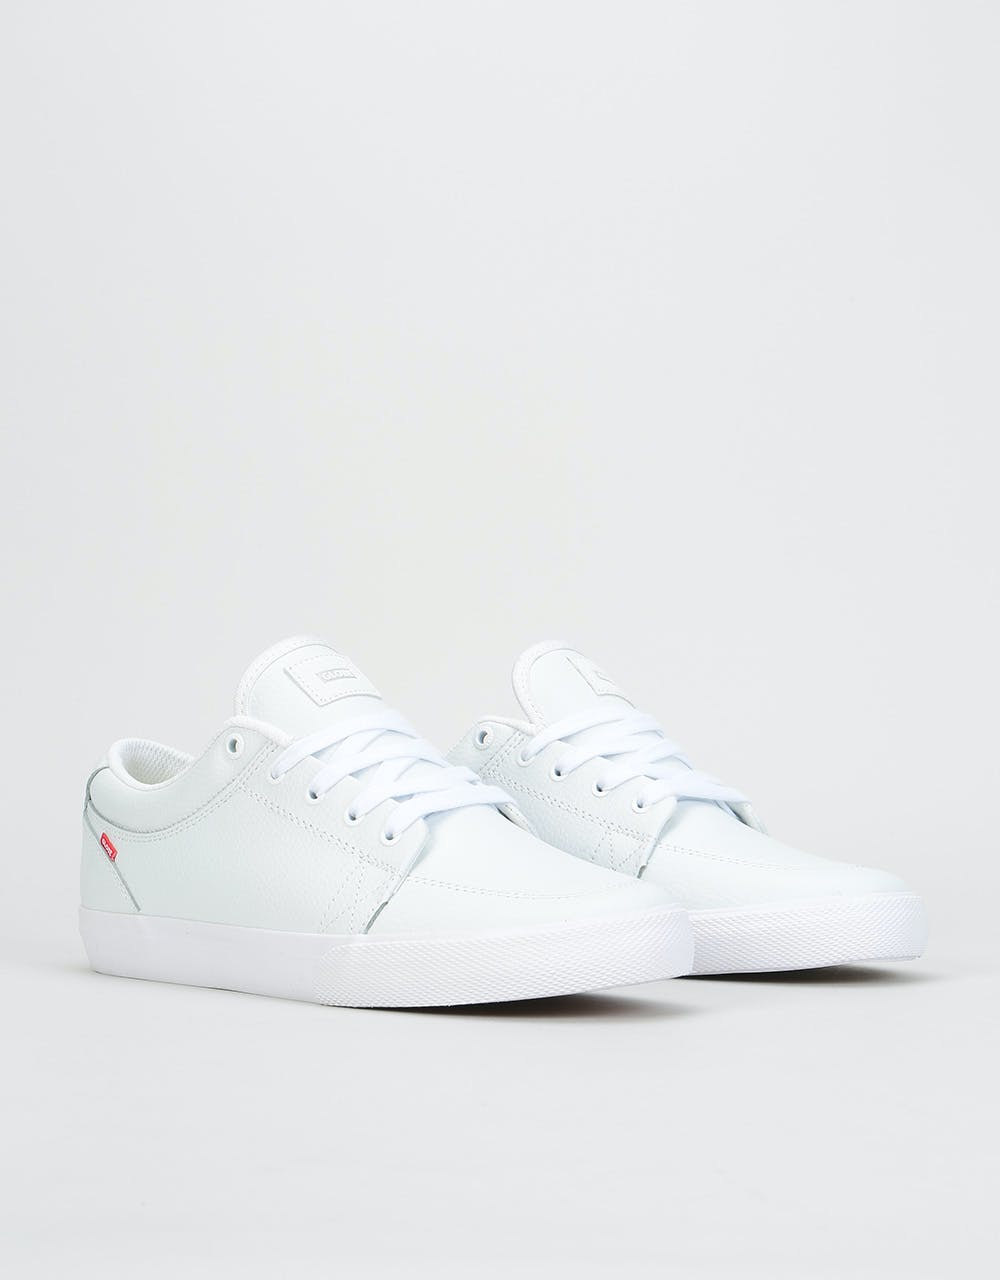 Globe GS Skate Shoes - White/White